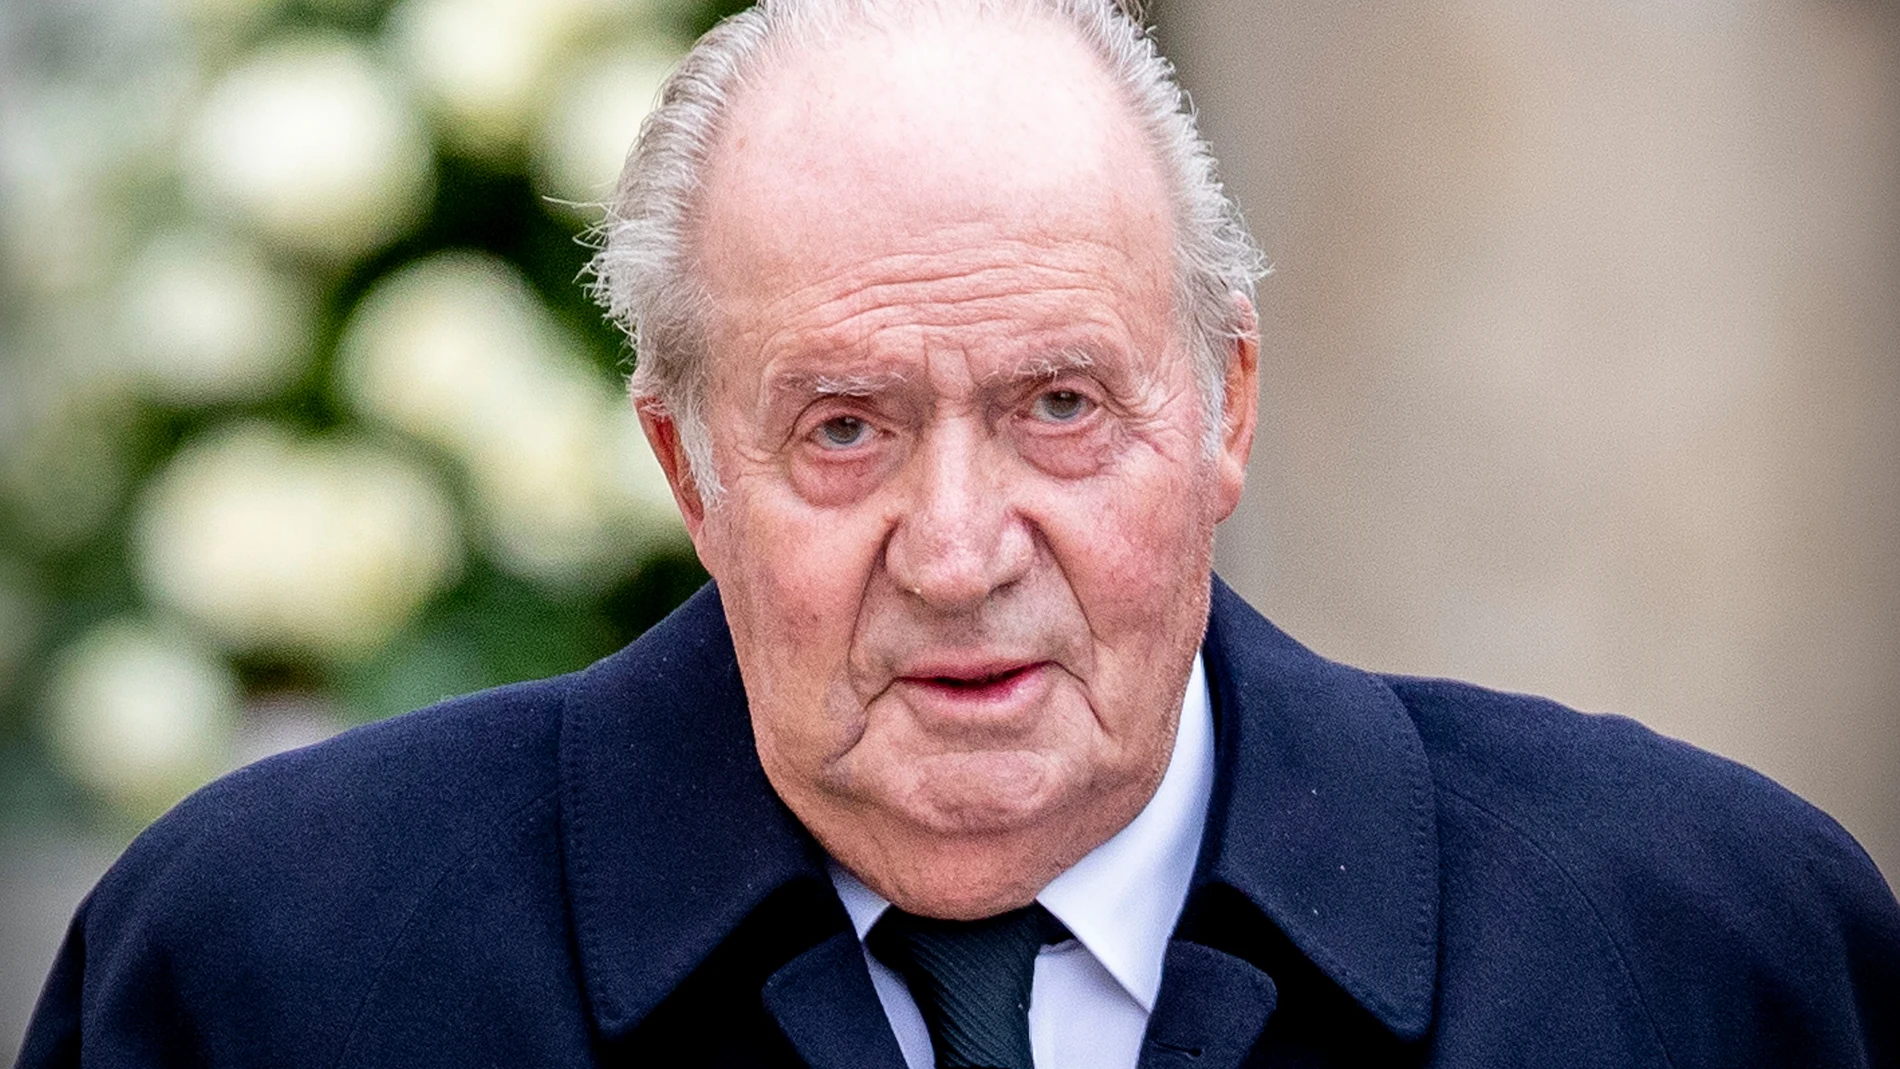 Juan Carlos I, exonerado por la justicia suiza y española